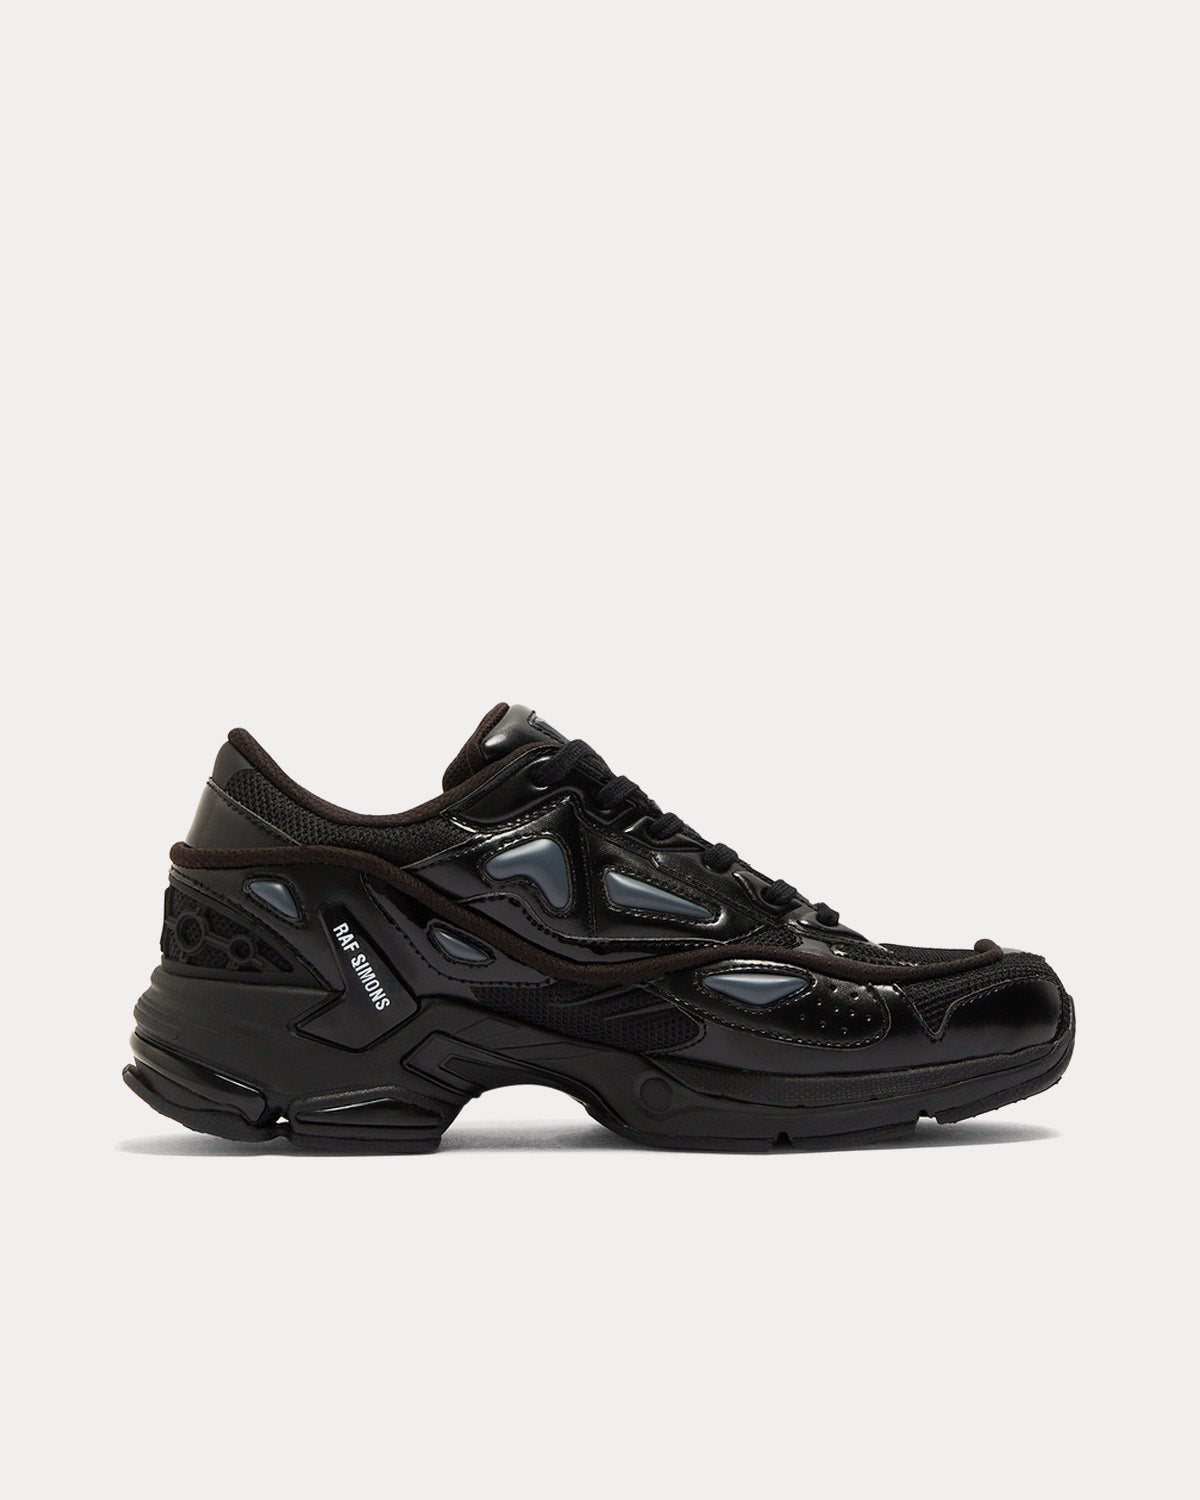 Pharaxus Black / Grey Low Top Sneakers